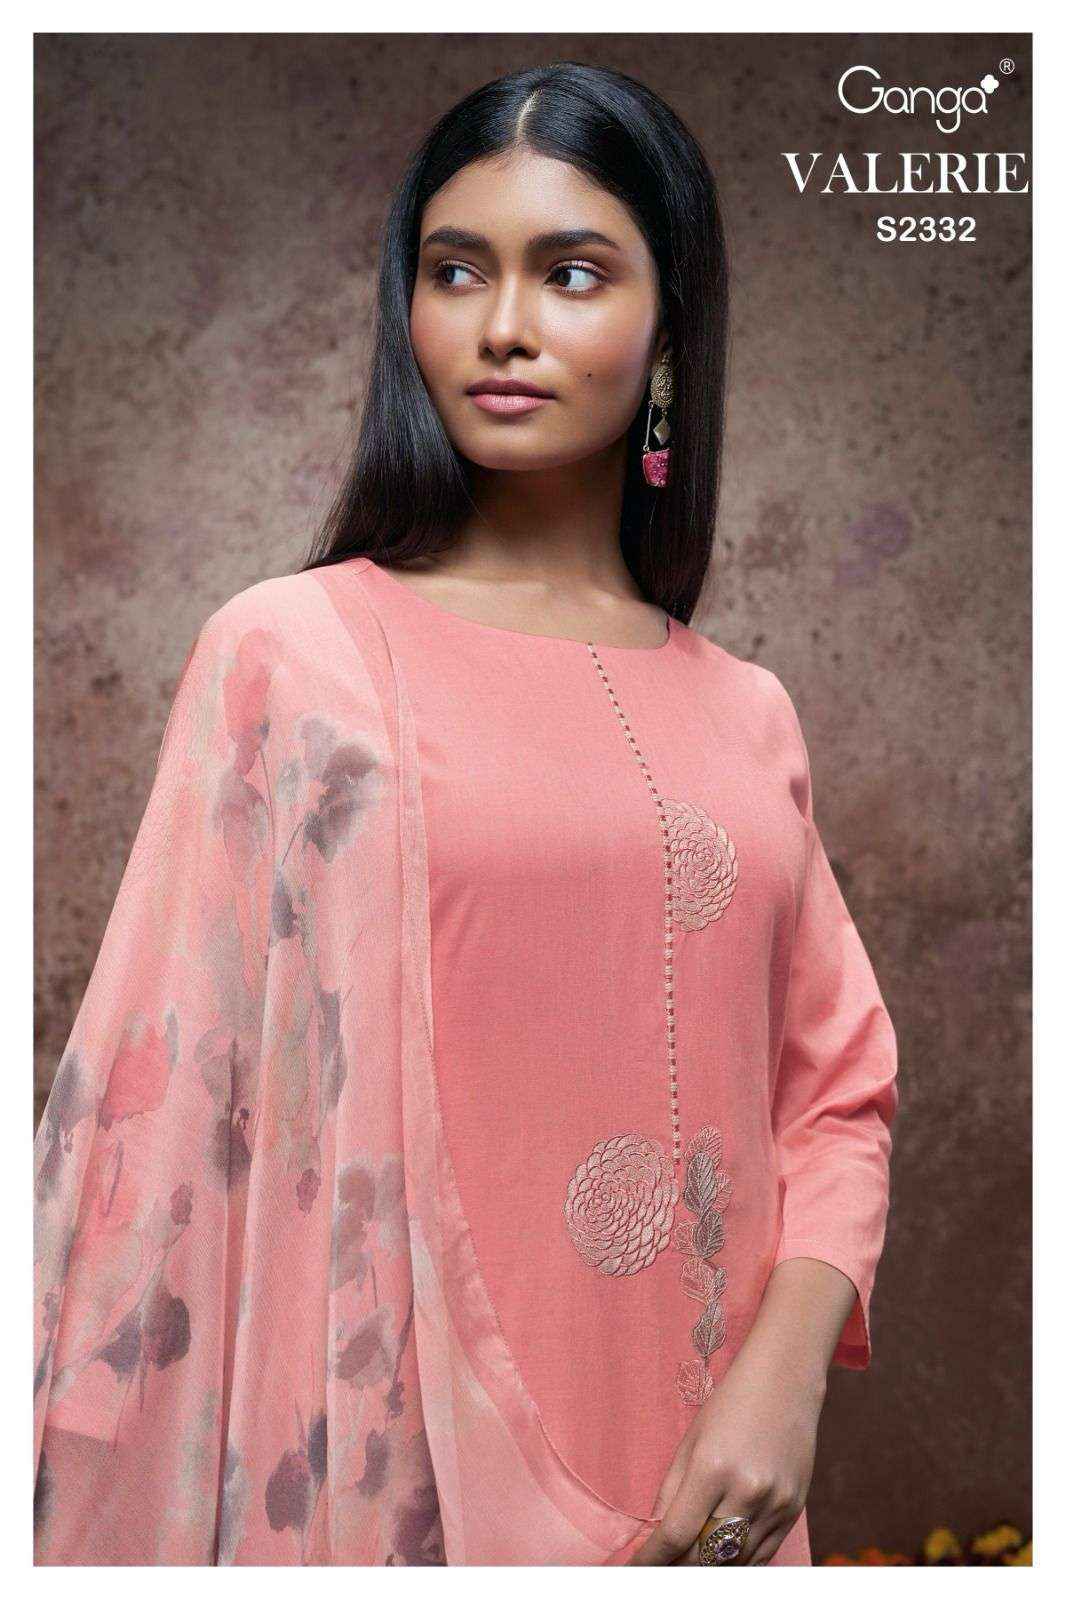 Ganga Valerie 2332 Fancy Cotton Salwar Suit Catalog Dealers ( 4 pcs catalog )